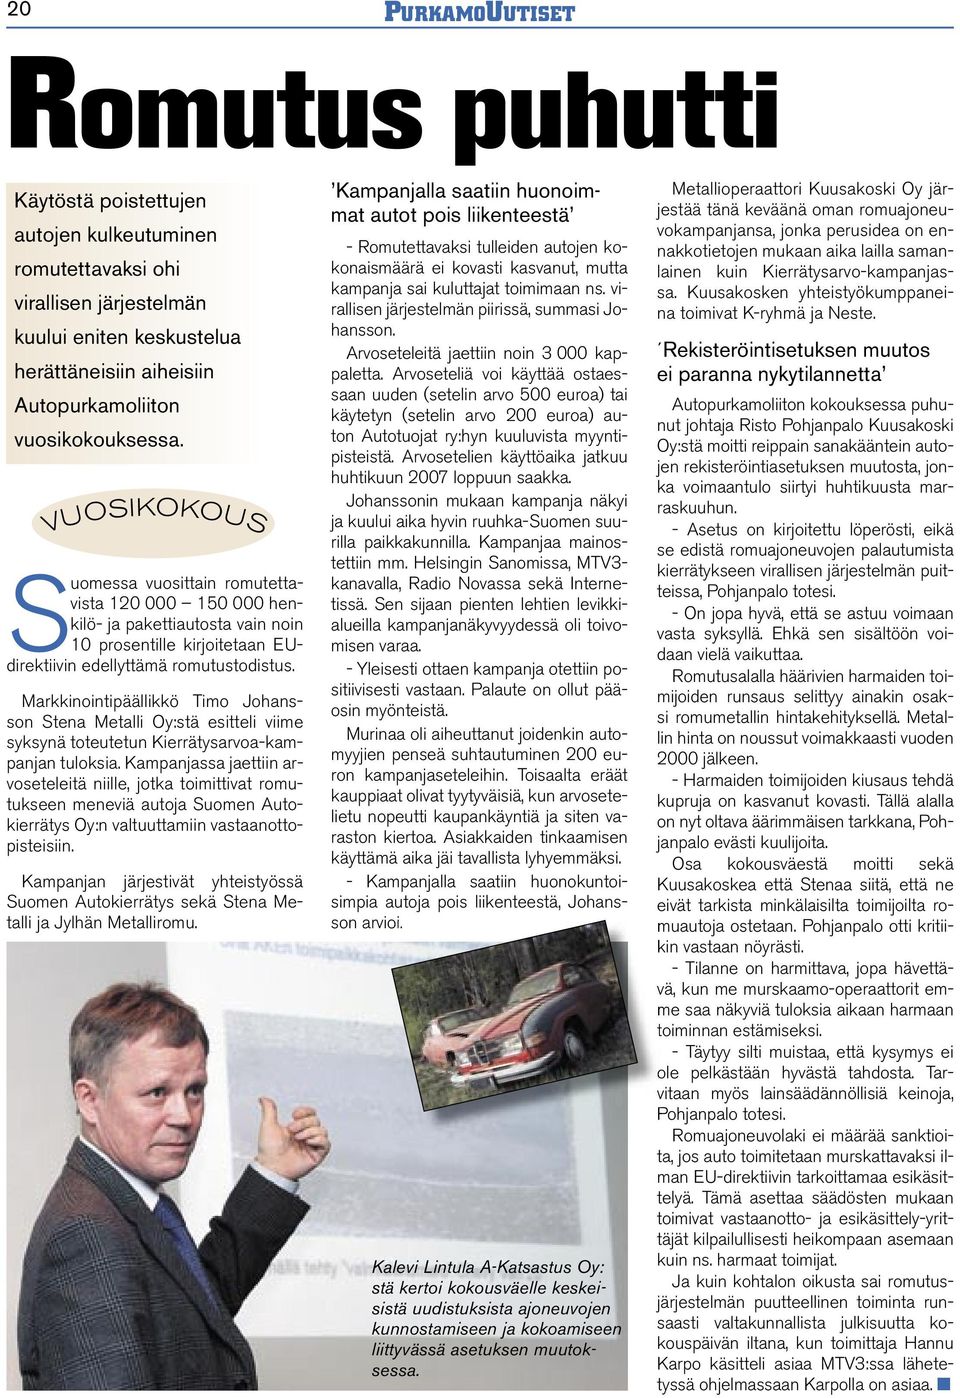 Markkinointipäällikkö Timo Johansson Stena Metalli Oy:stä esitteli viime syksynä toteutetun Kierrätysarvoa-kampanjan tuloksia.